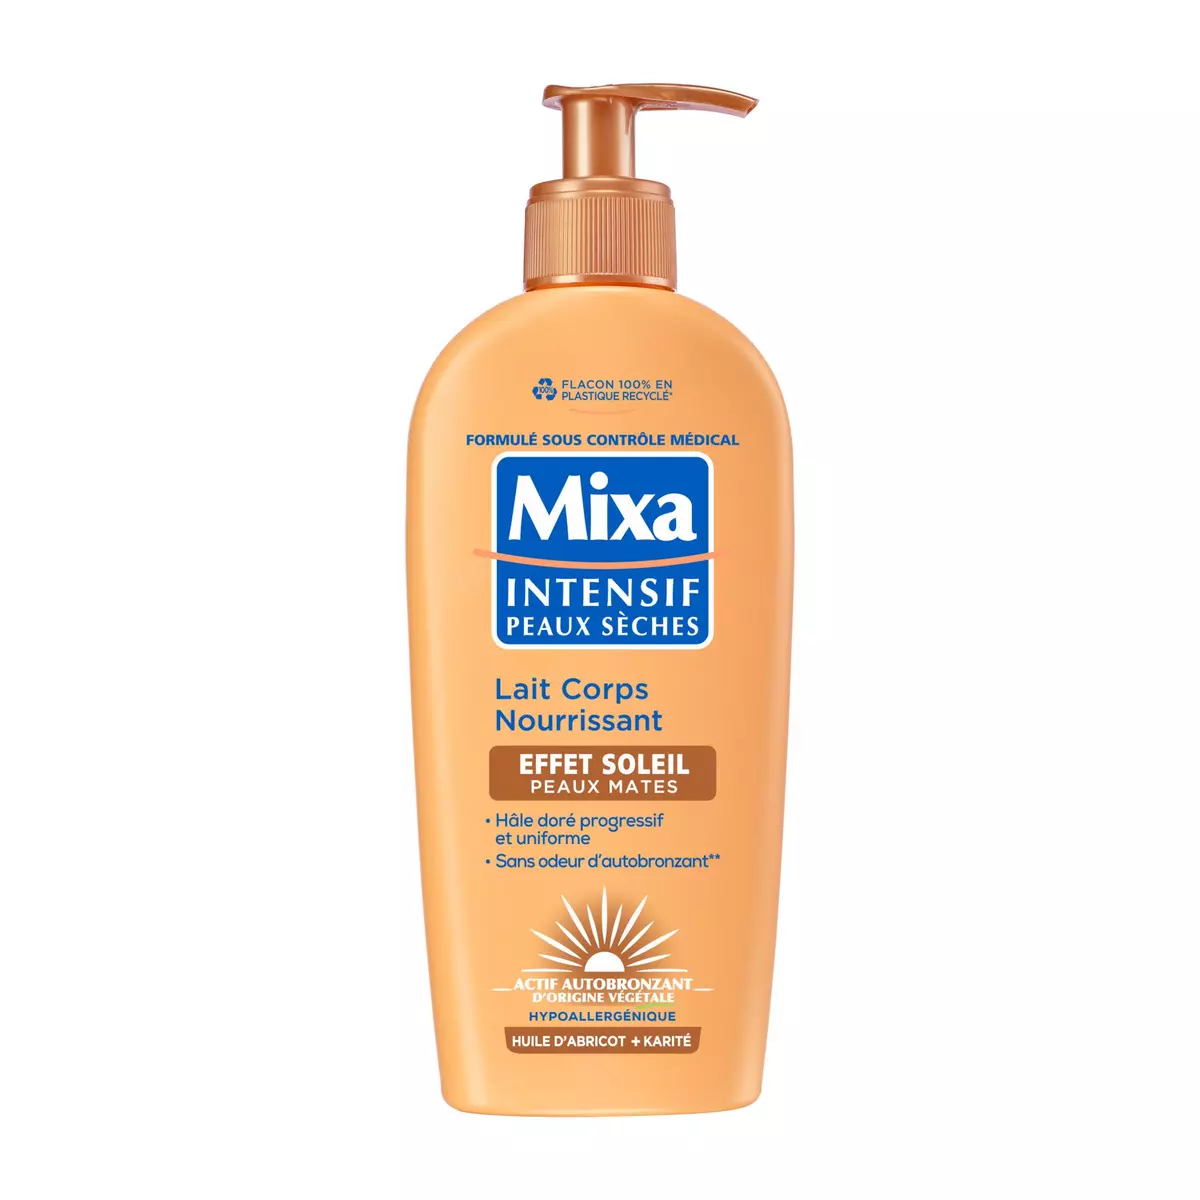 MIXA Intensif Lait corps nourrissant à l'huile d'abricot et karité effet soleil peaux mates 250ml